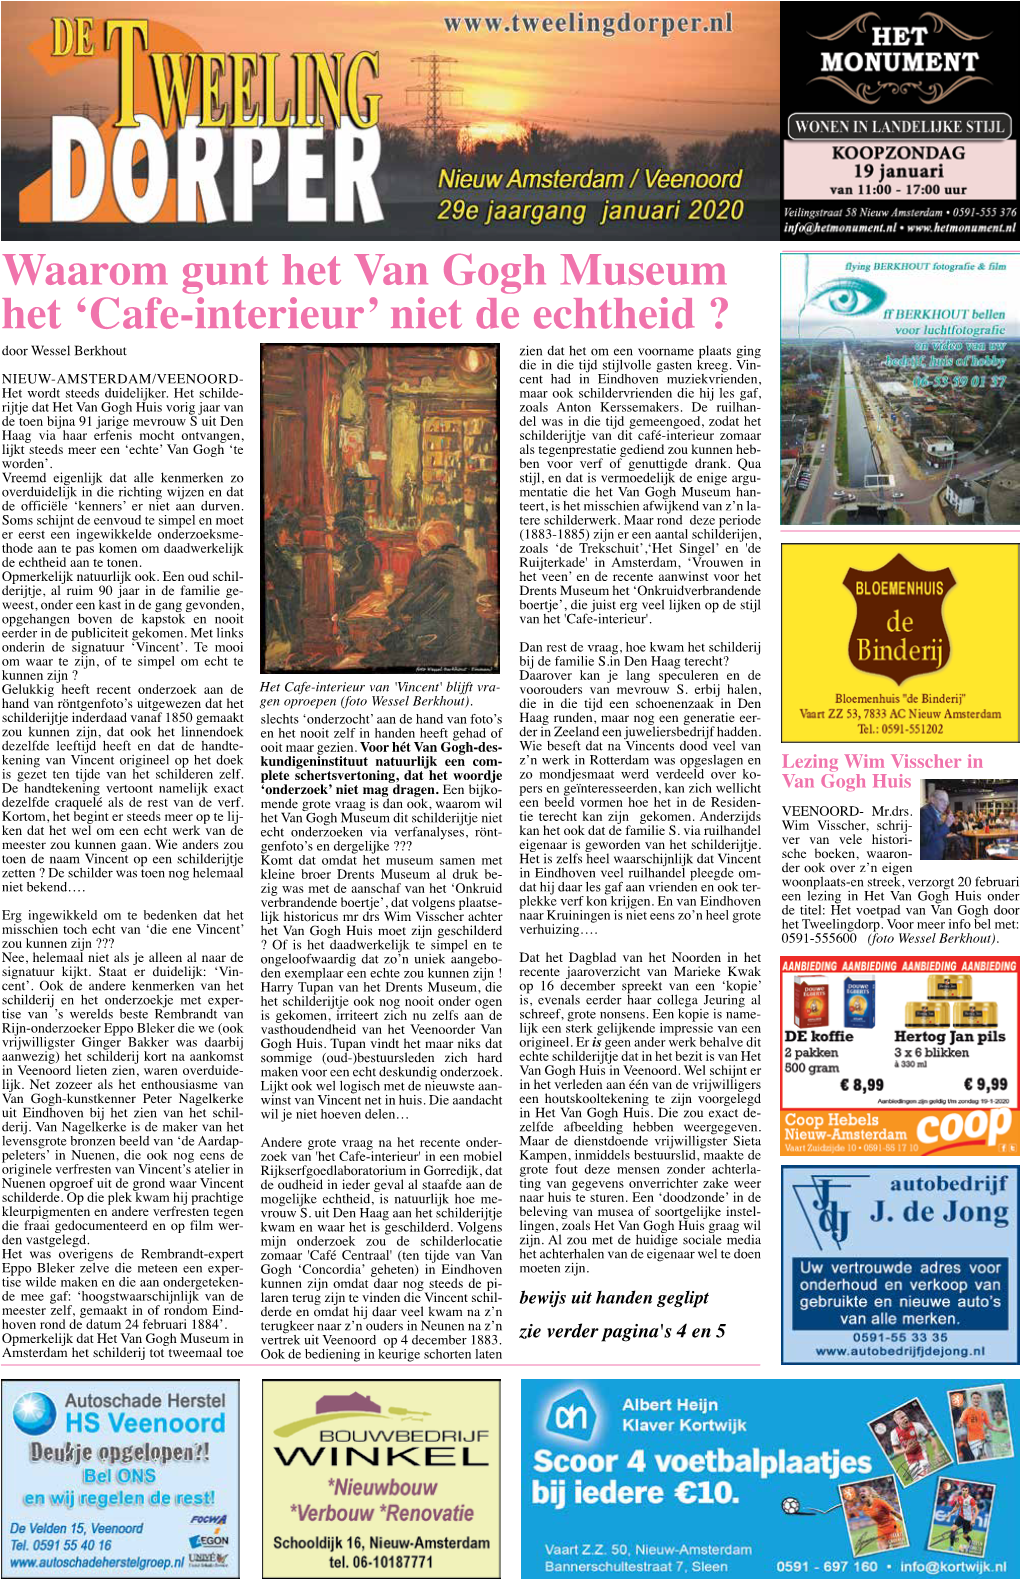 Waarom Gunt Het Van Gogh Museum Het 'Cafe-Interieur' Niet De Echtheid ?